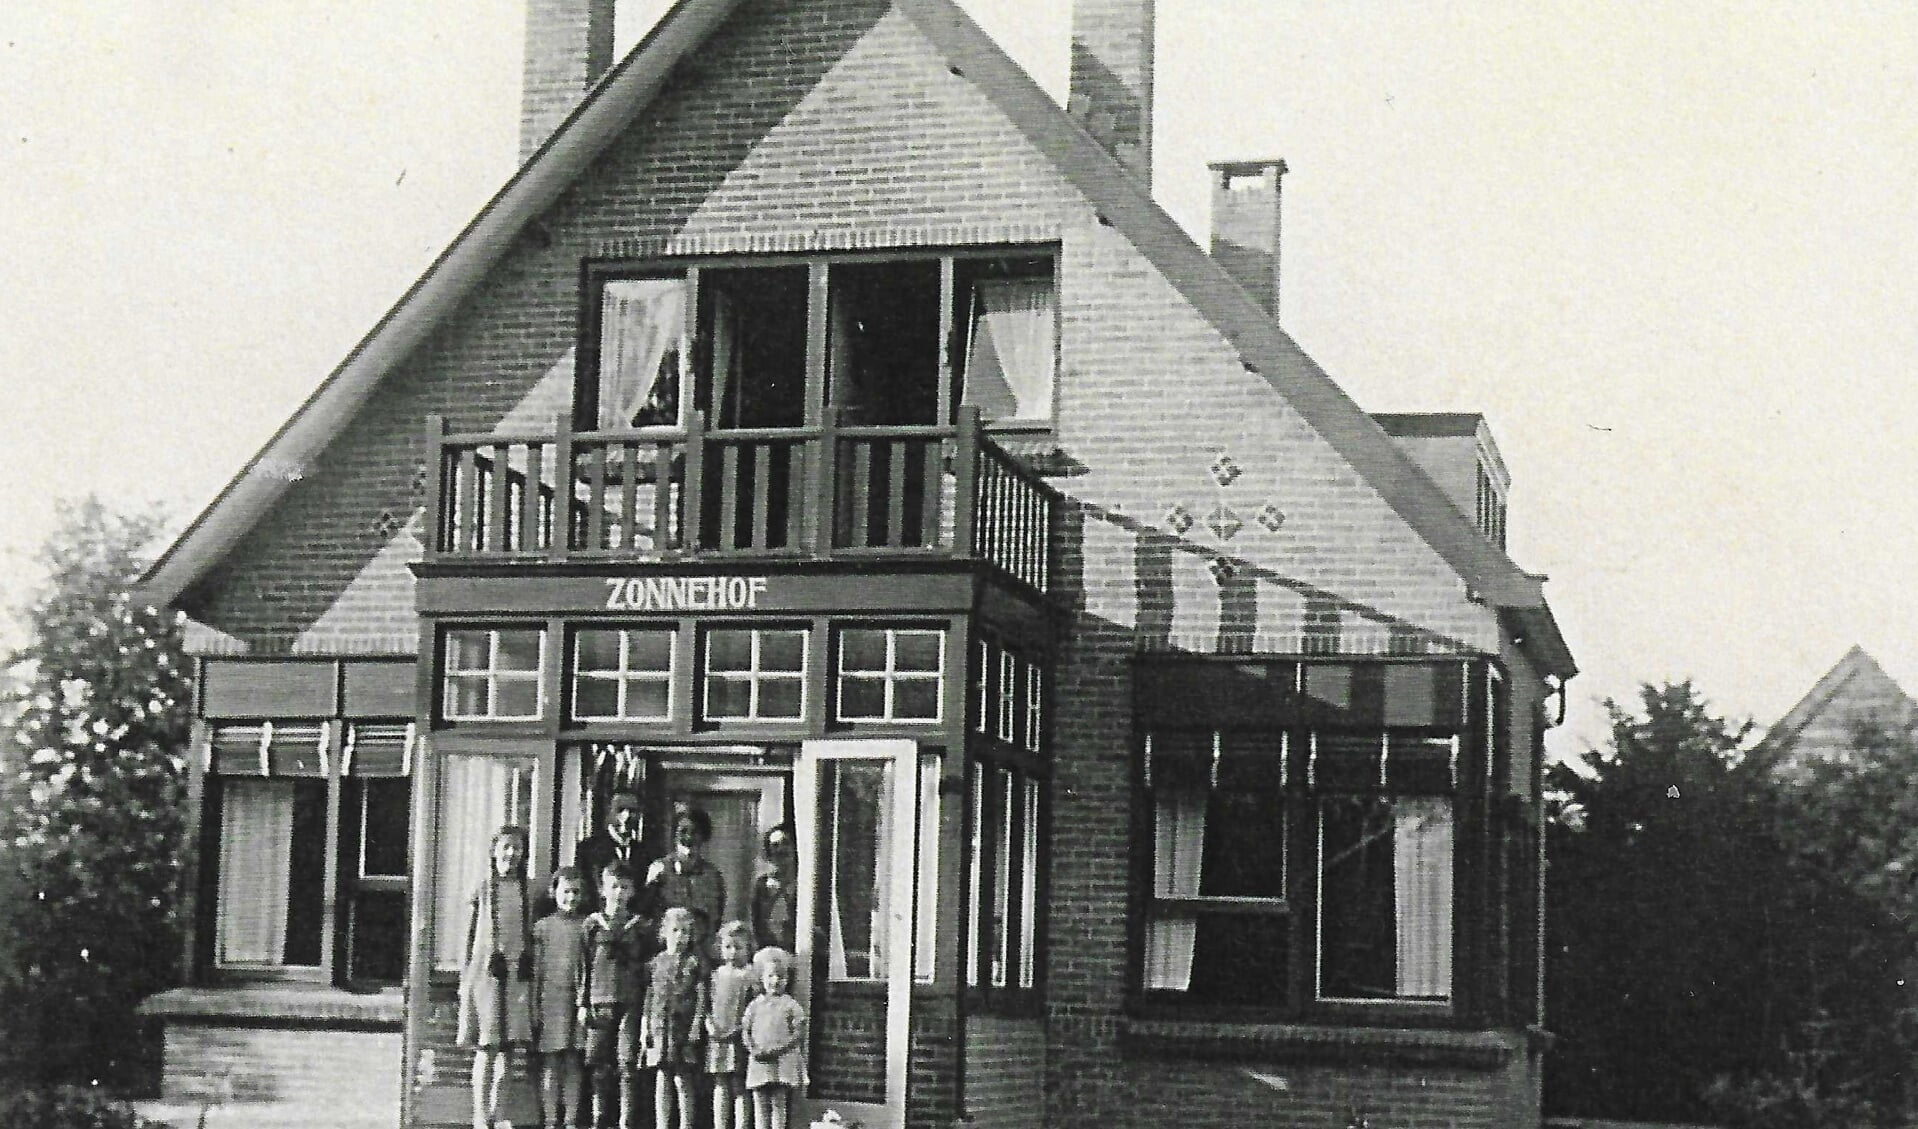 Het gezin Middeldorp voor Zonnehof. Andries Middeldorp midden voor. De woning werd in 1920 gebouwd en in 1933 al weer afgebroken om plaats te maken voor een nieuw huis met dezelfde naam. 